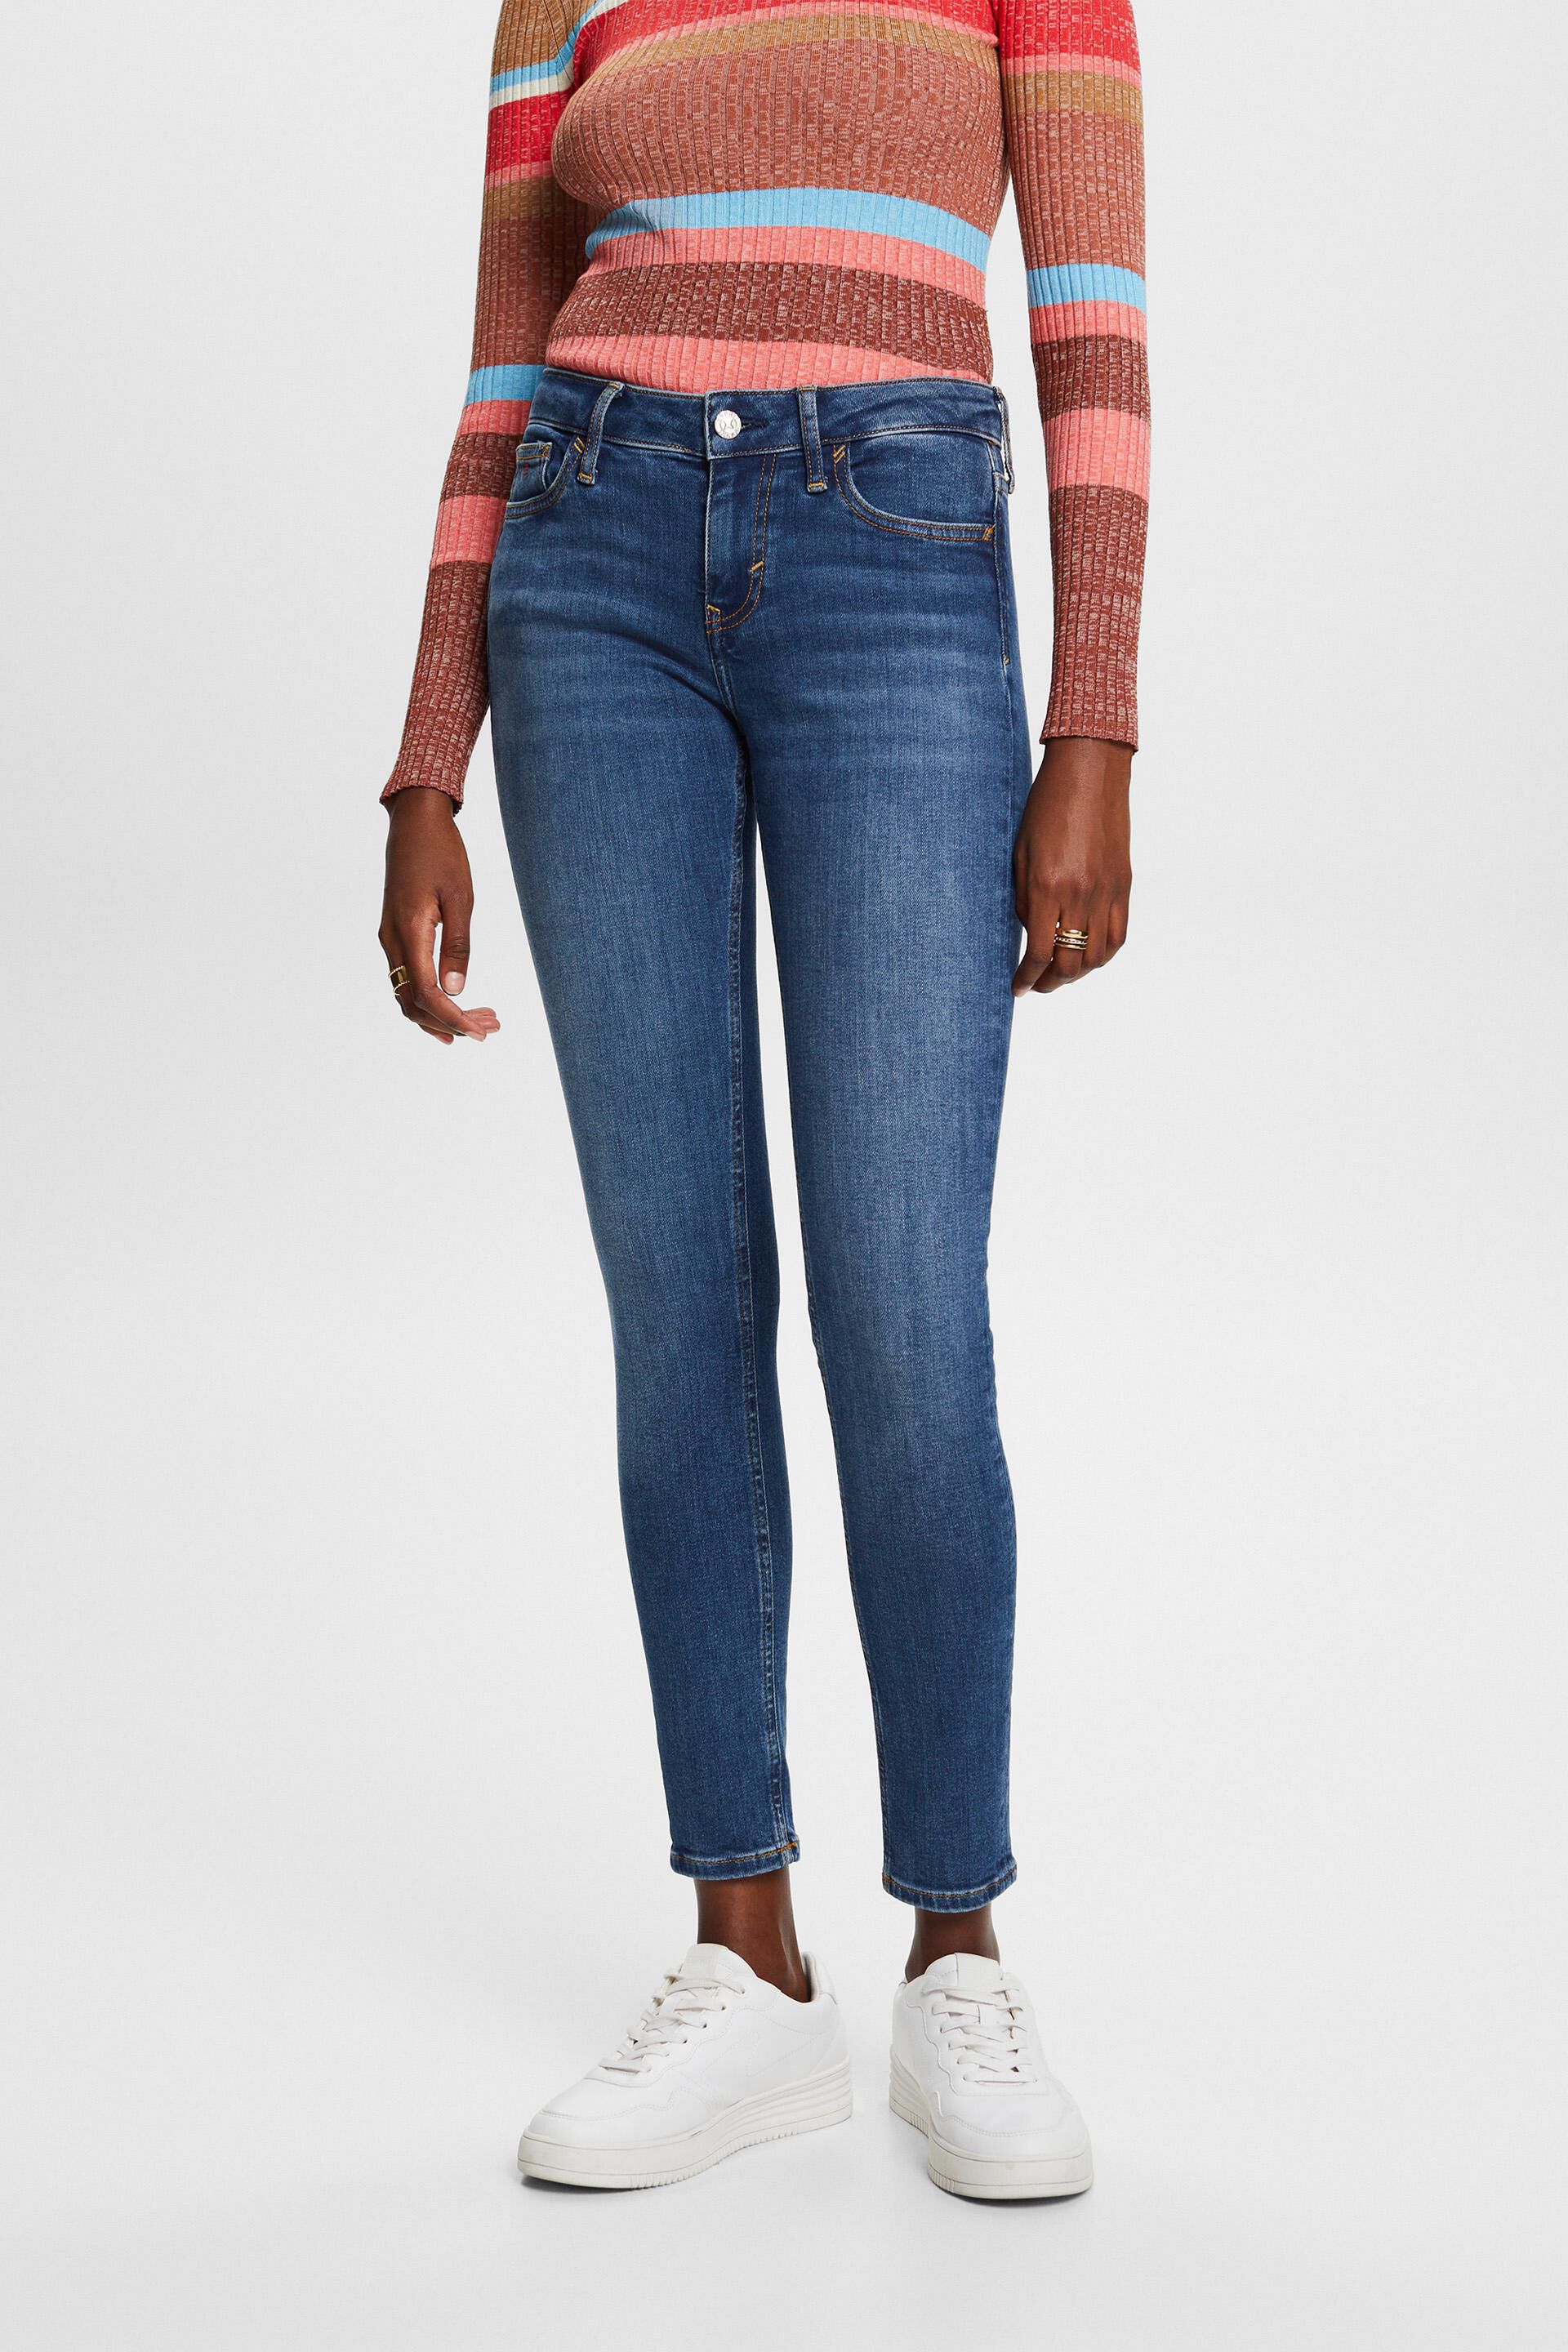 Esprit skinny Premium mid-rise jeans